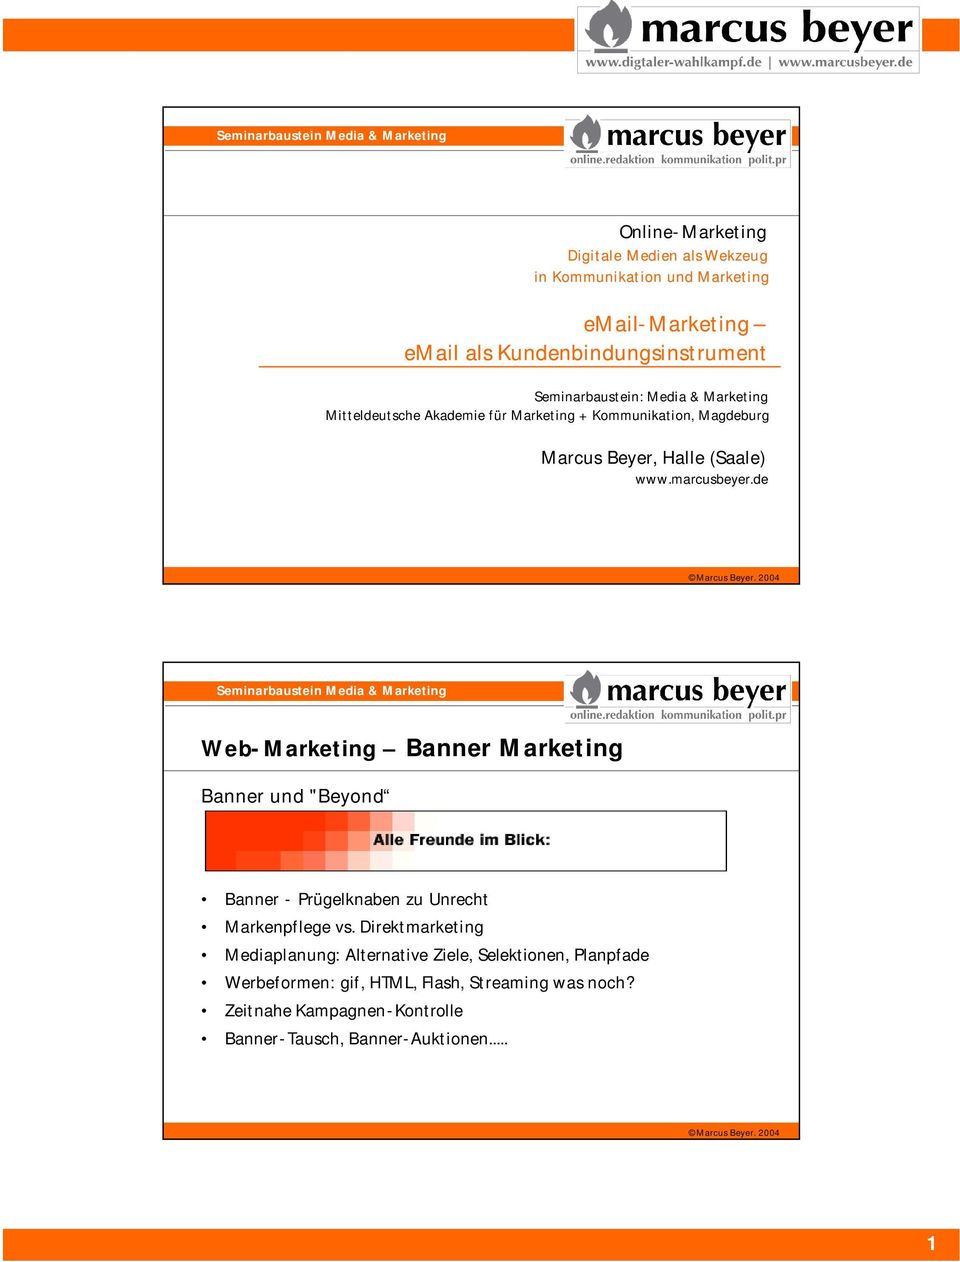 marcusbeyer.de Web-Marketing Banner Marketing Banner und "Beyond Banner - Prügelknaben zu Unrecht Markenpflege vs.